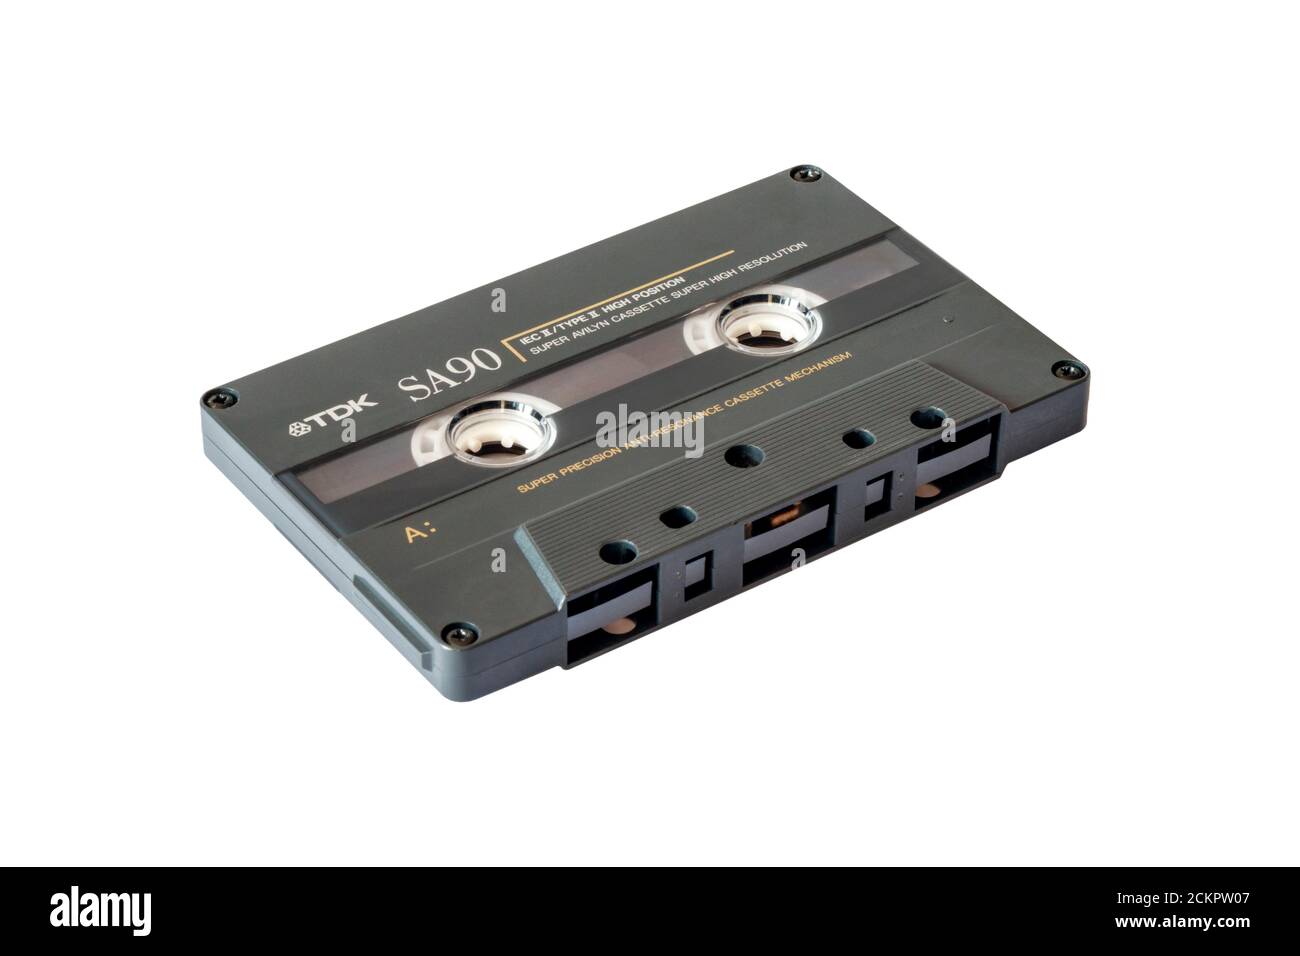 Una cinta de casete compacta de alta resolución TDK SA90 de 90 minutos de 1980 para grabaciones de audio, aislada sobre un fondo blanco Foto de stock